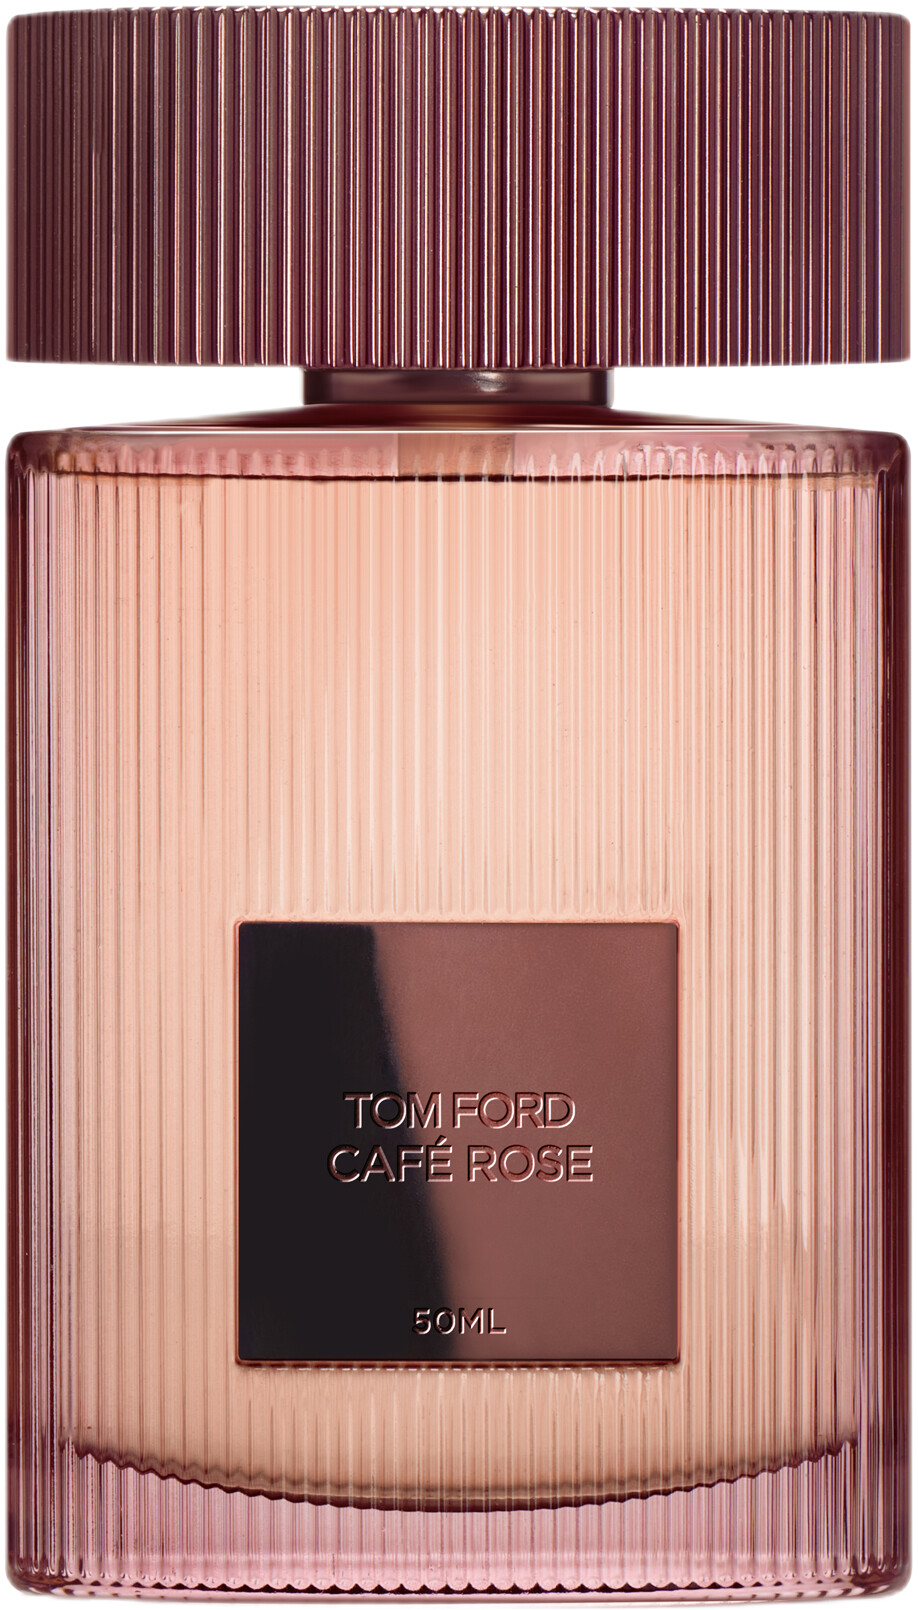 Tom Ford Cafe Rose Eau de Parfum Spray 50ml